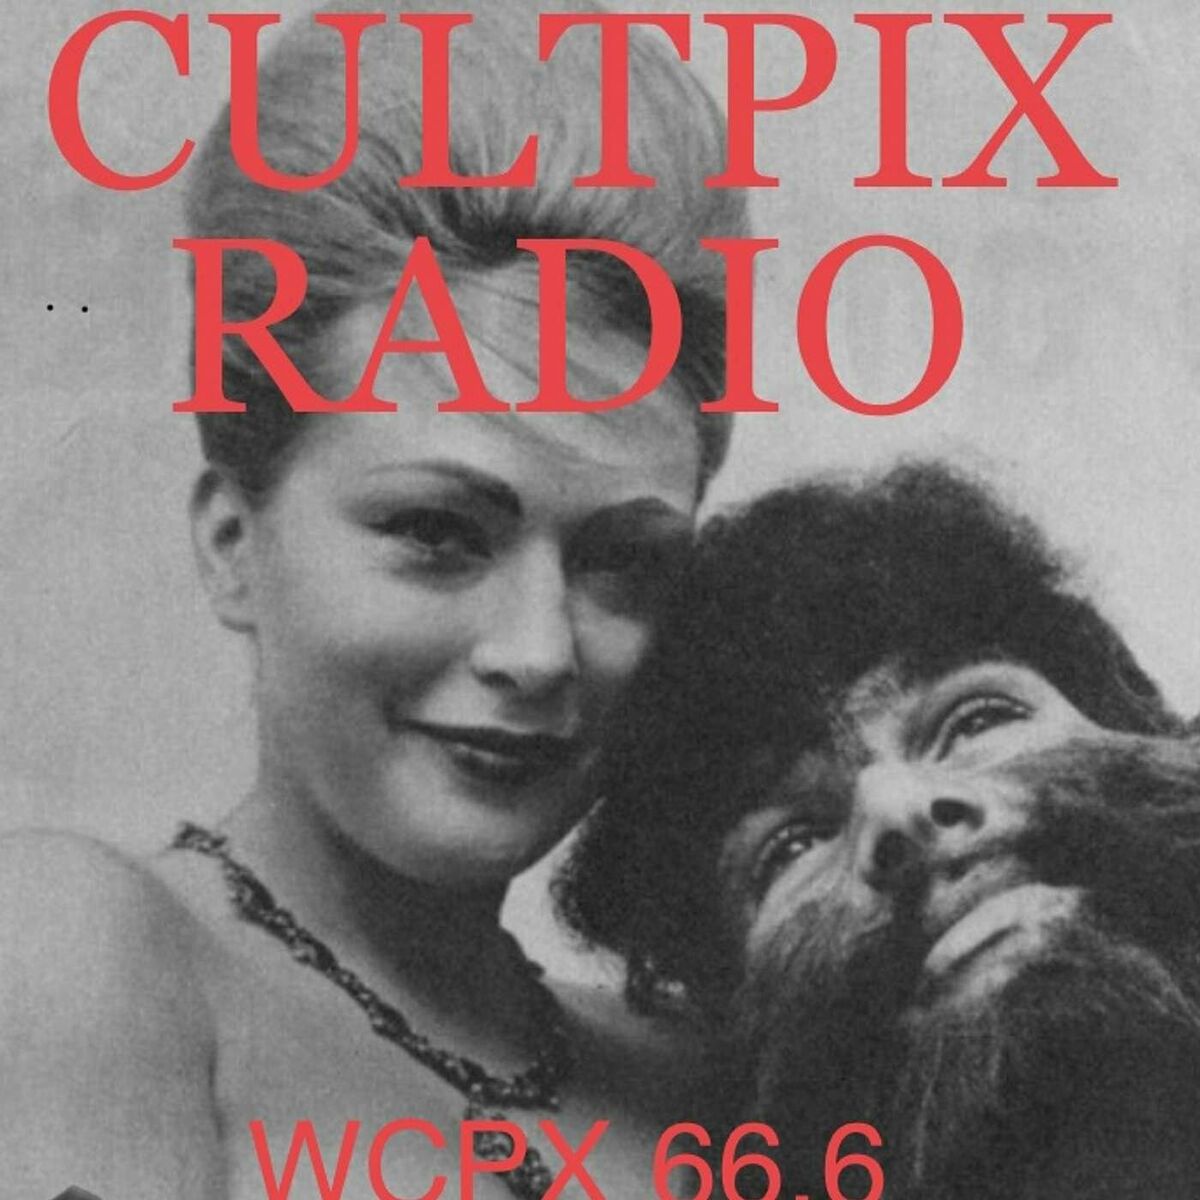 1200px x 1200px - Listen to Cultpix Radio podcast | Deezer